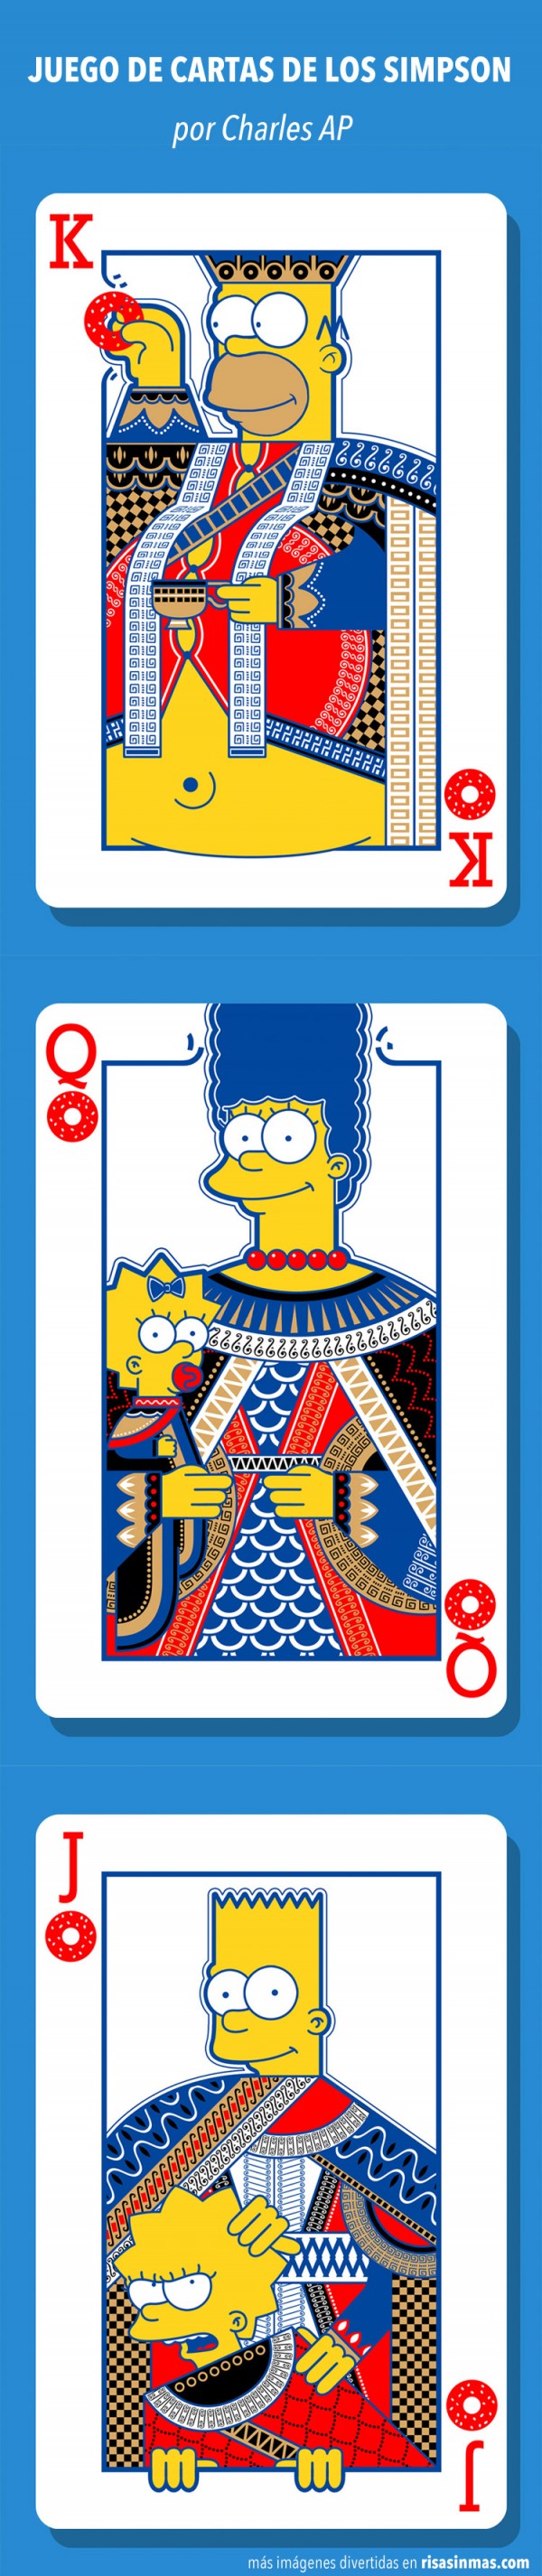 Juego de cartas de los Simpson